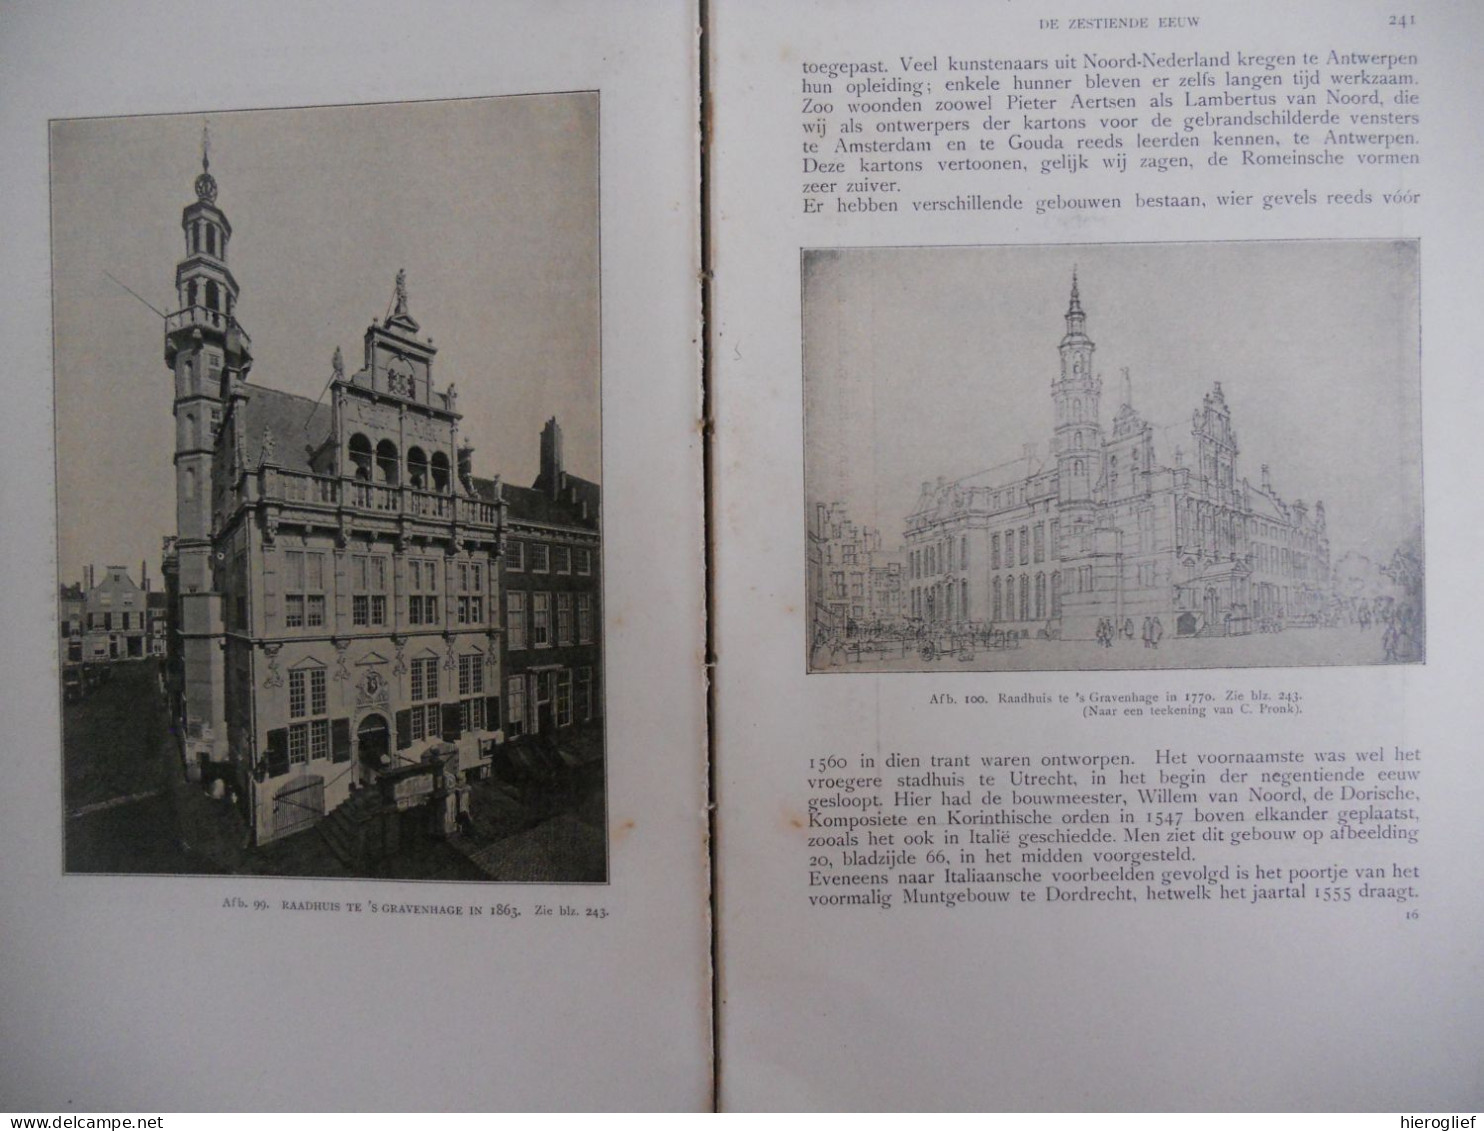 Geschiedenis der NEDERLANDSCHE BOUWKUNST door A.W Weissman 1912 van Looy Amsterdam / Nederland architectuur